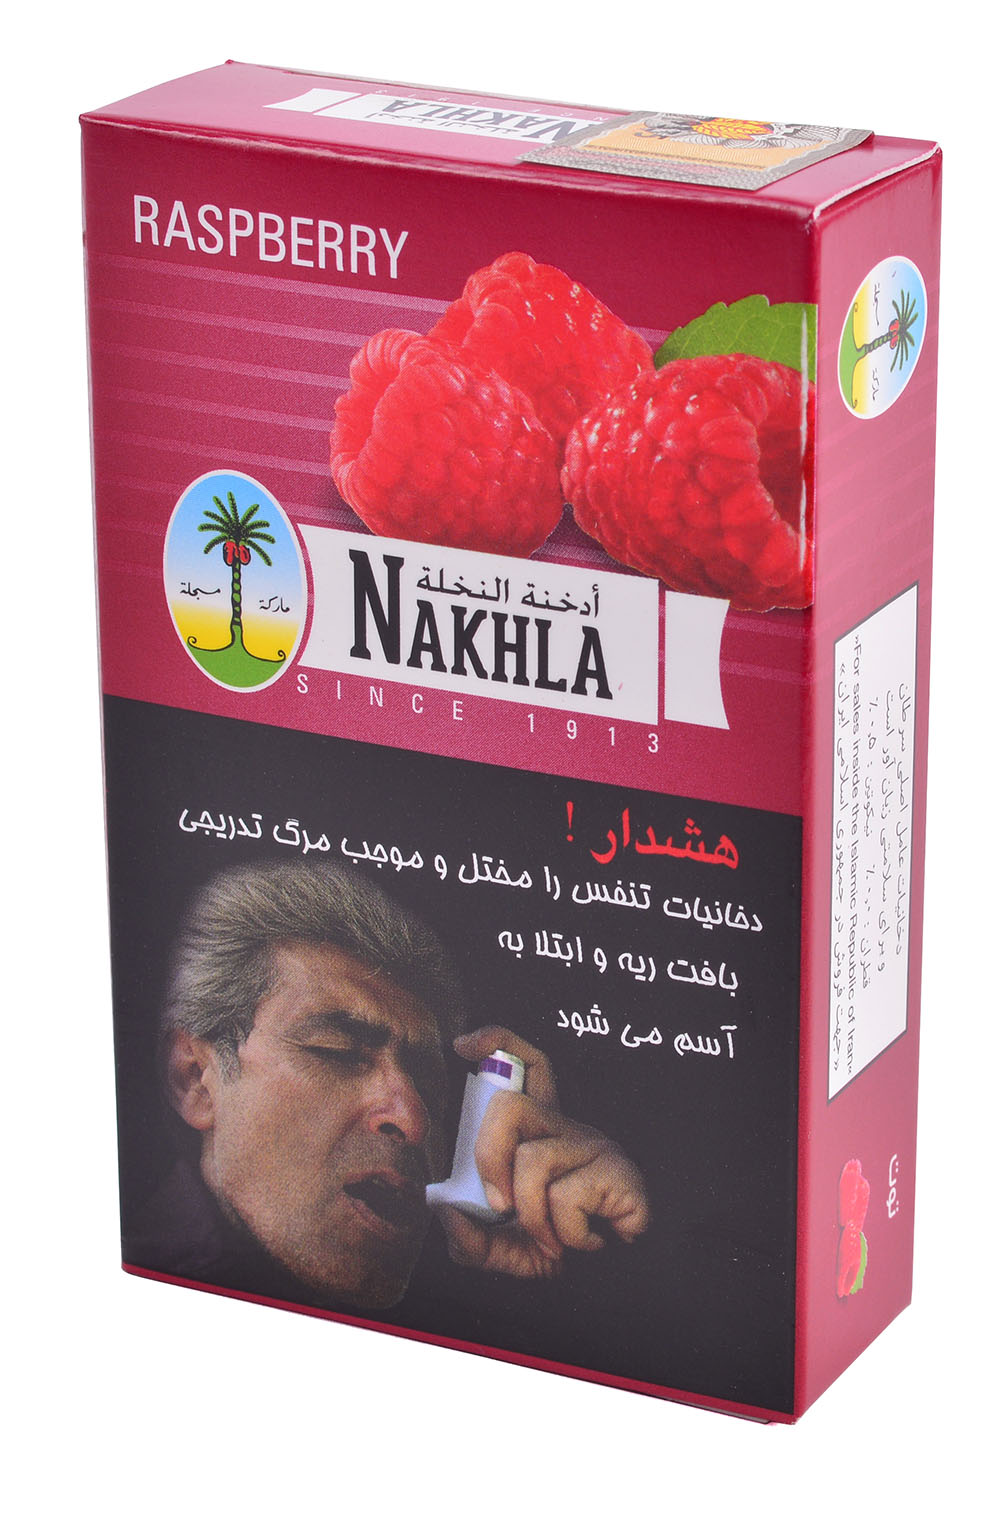 Табак Nakhla